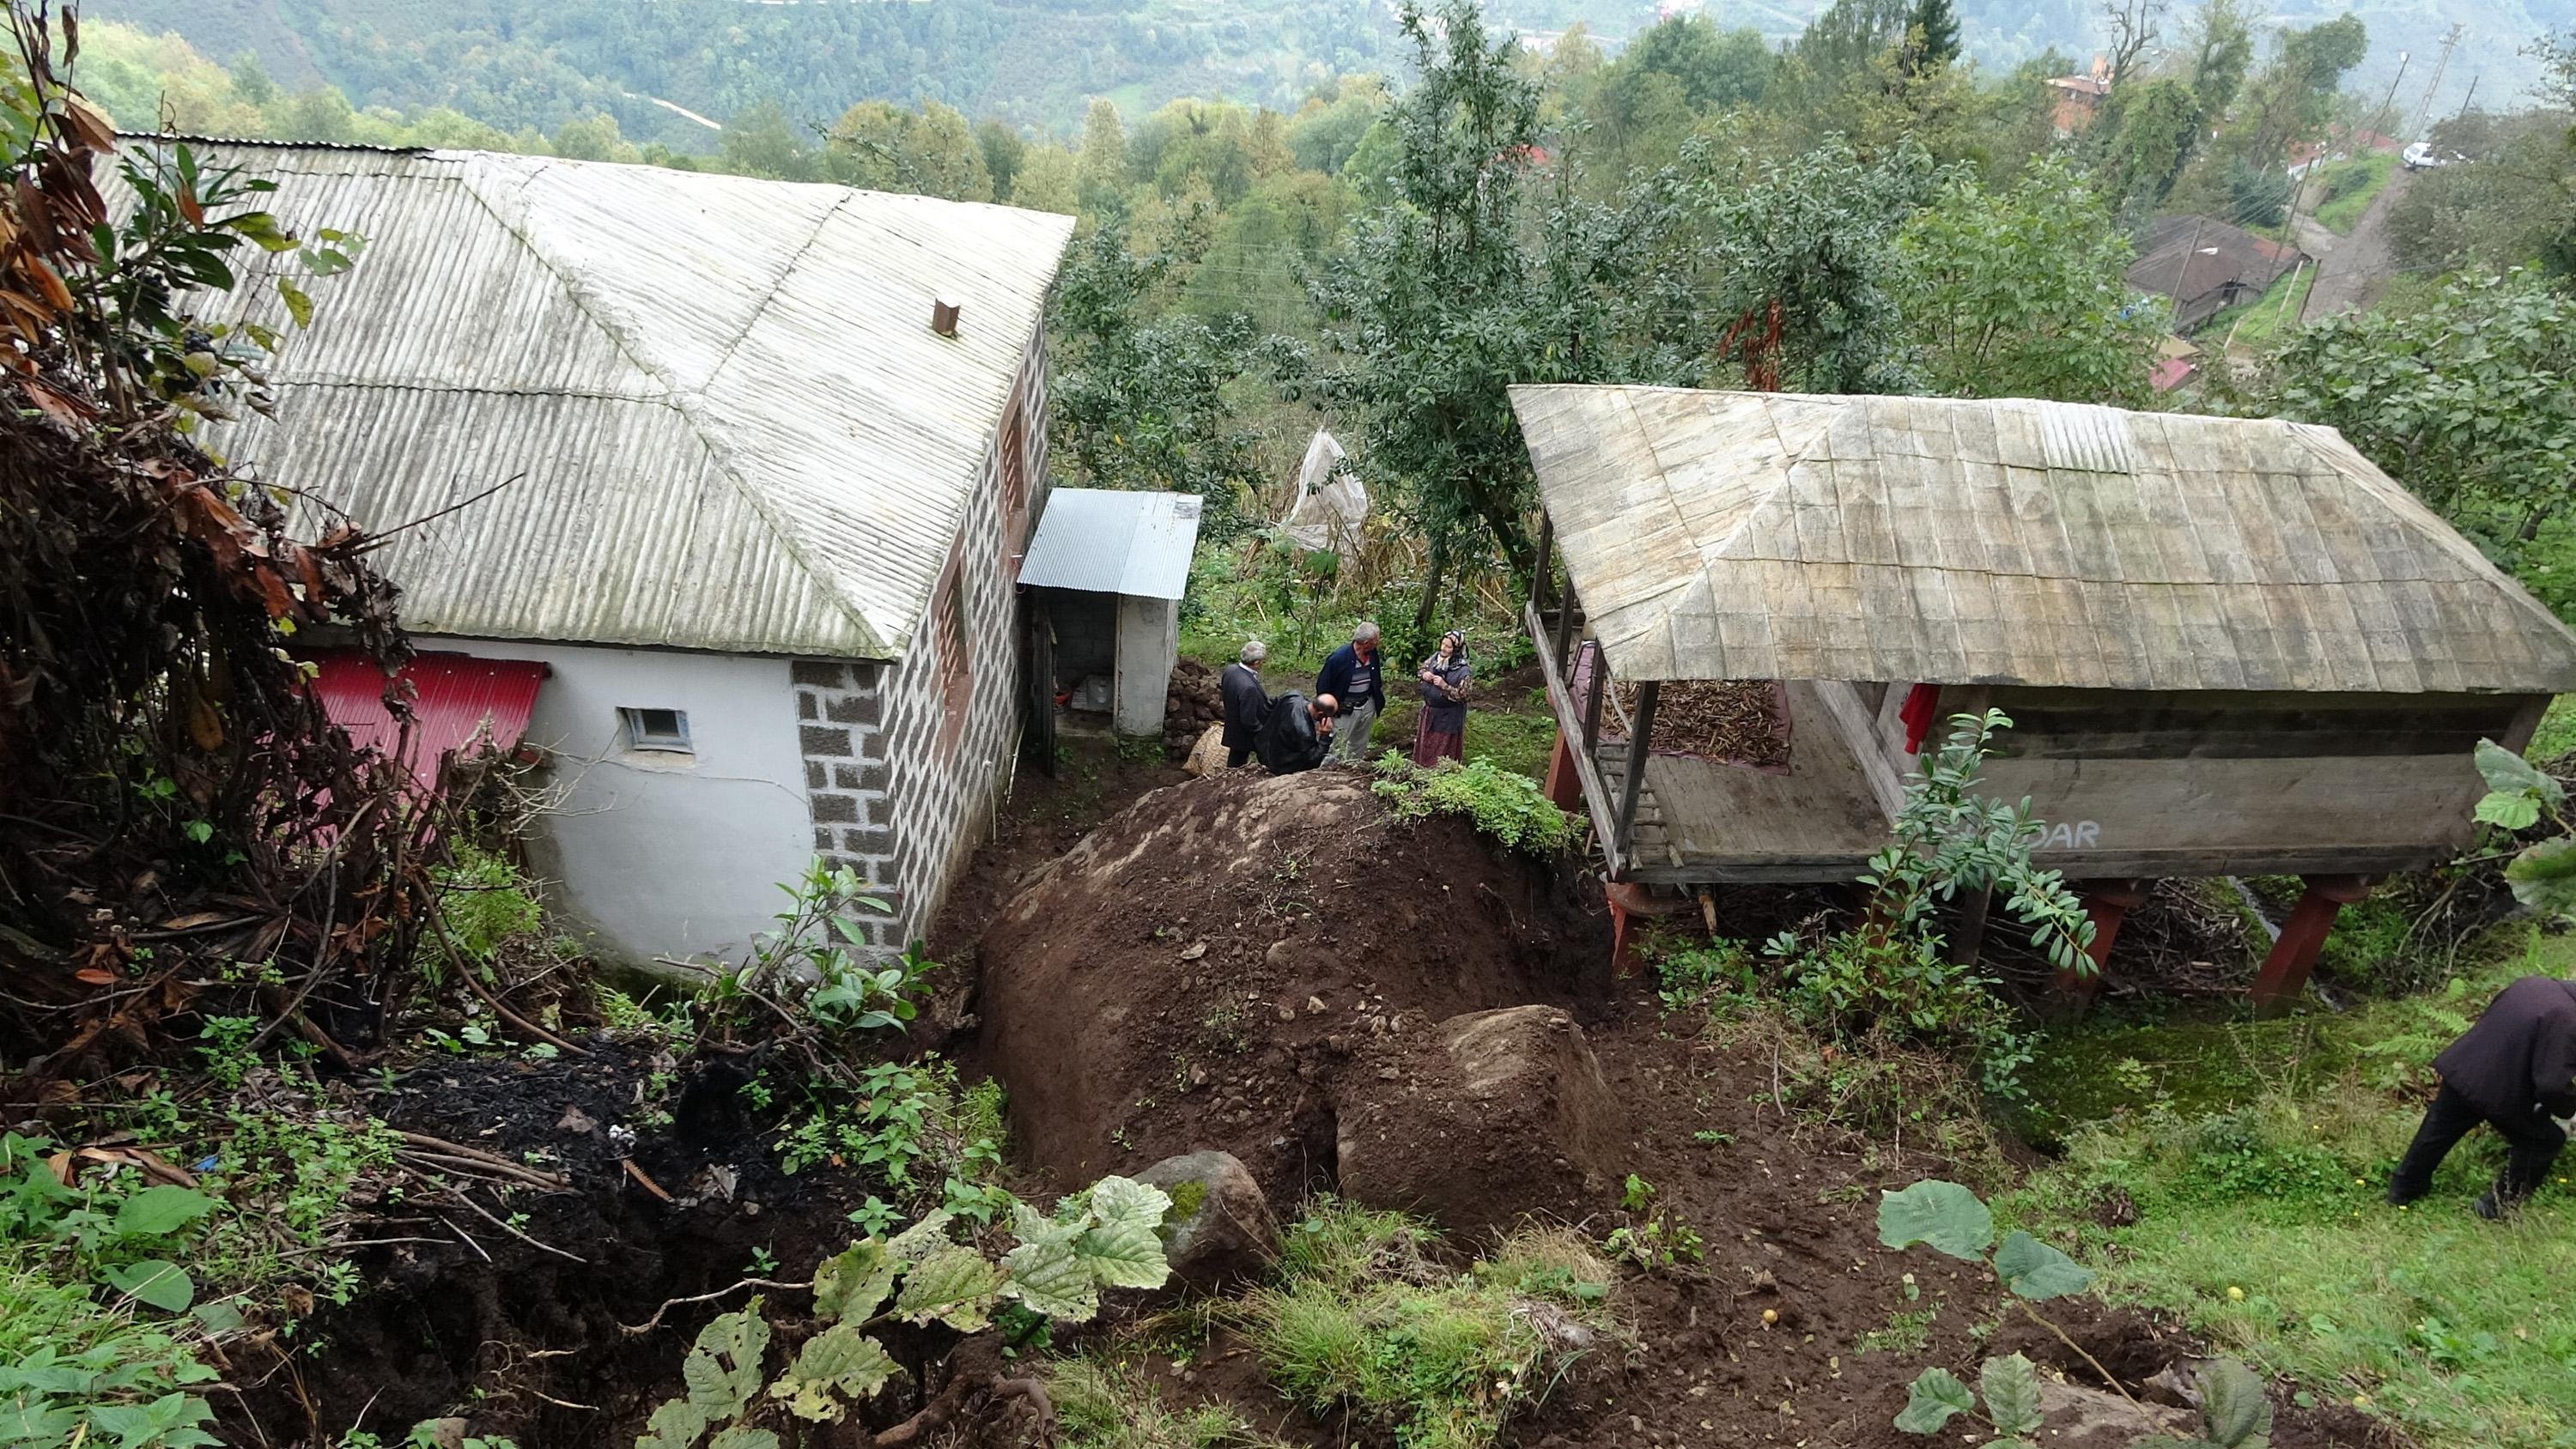 Trabzonda şoke eden olay 100 tonluk kaya evin yanına düştü